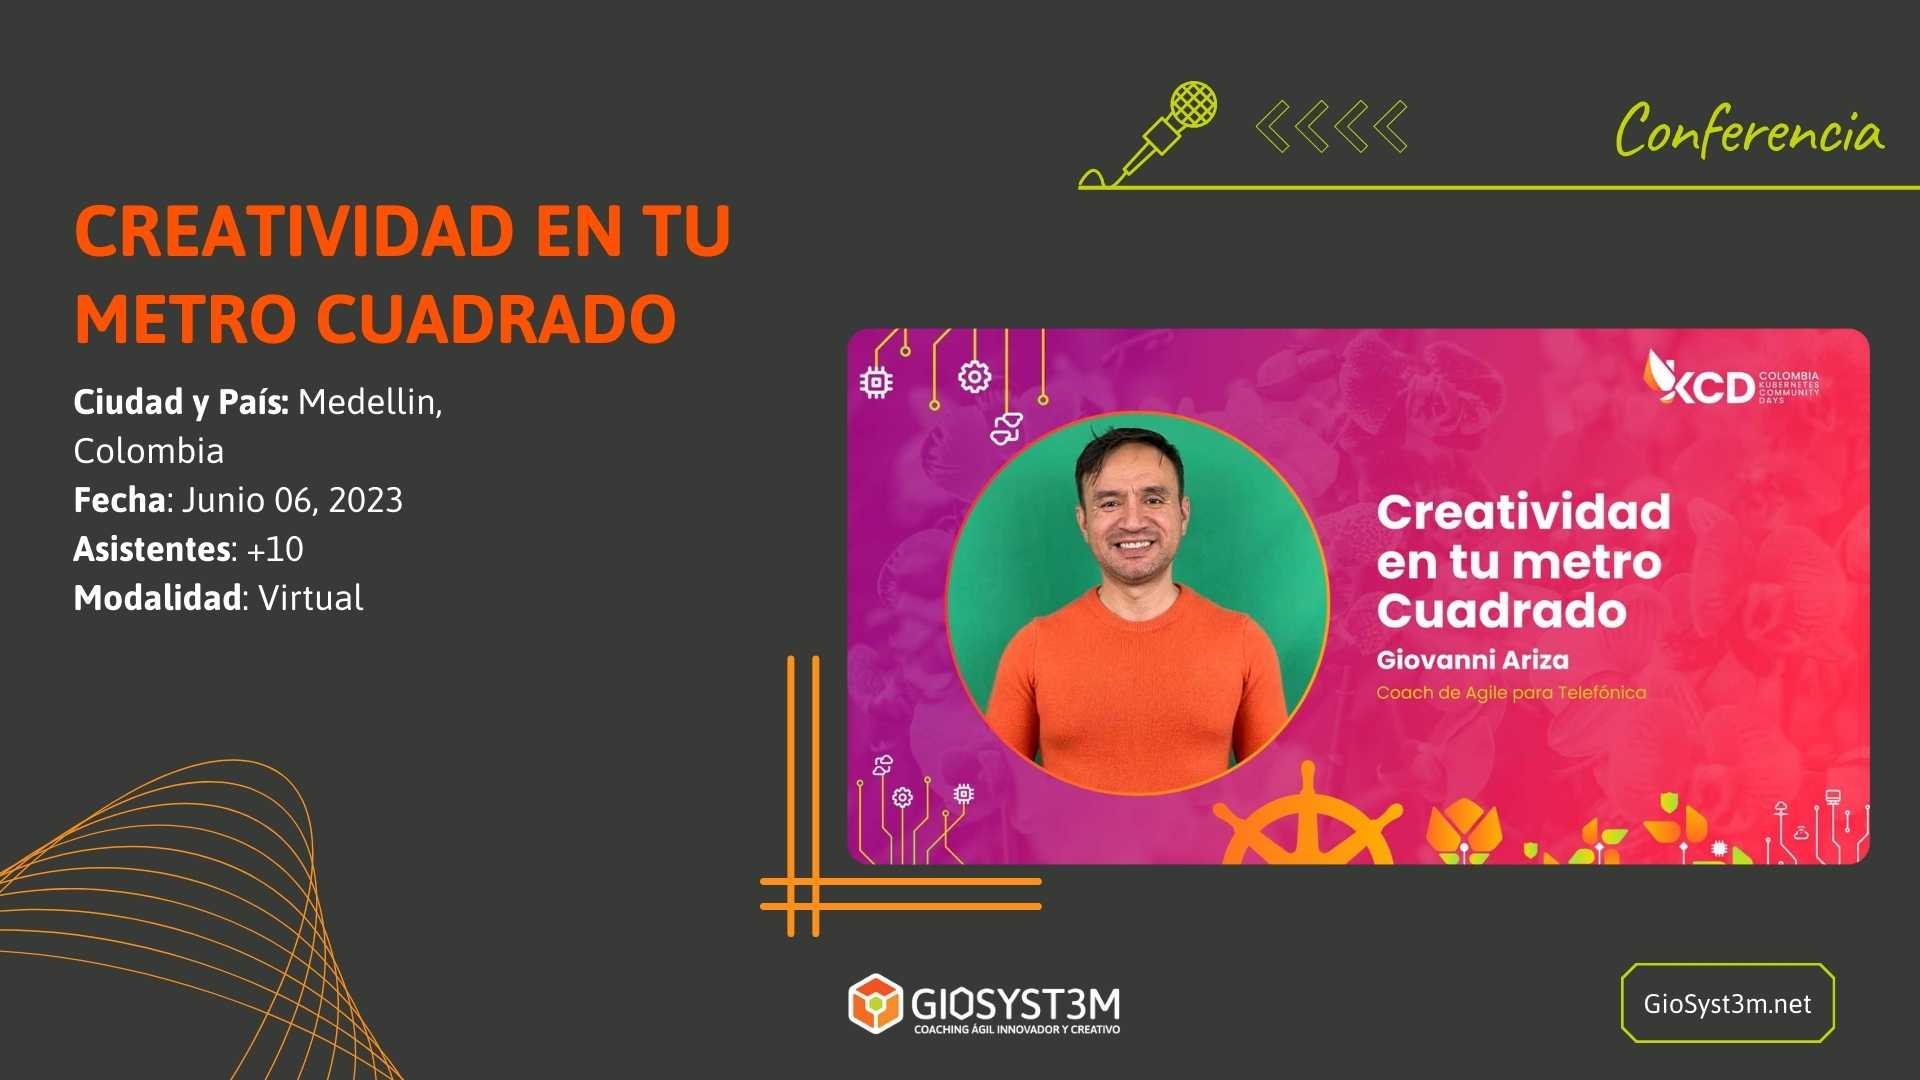 Conferencia - KCD Colombia 2023 - Creatividad - GioSyst3m